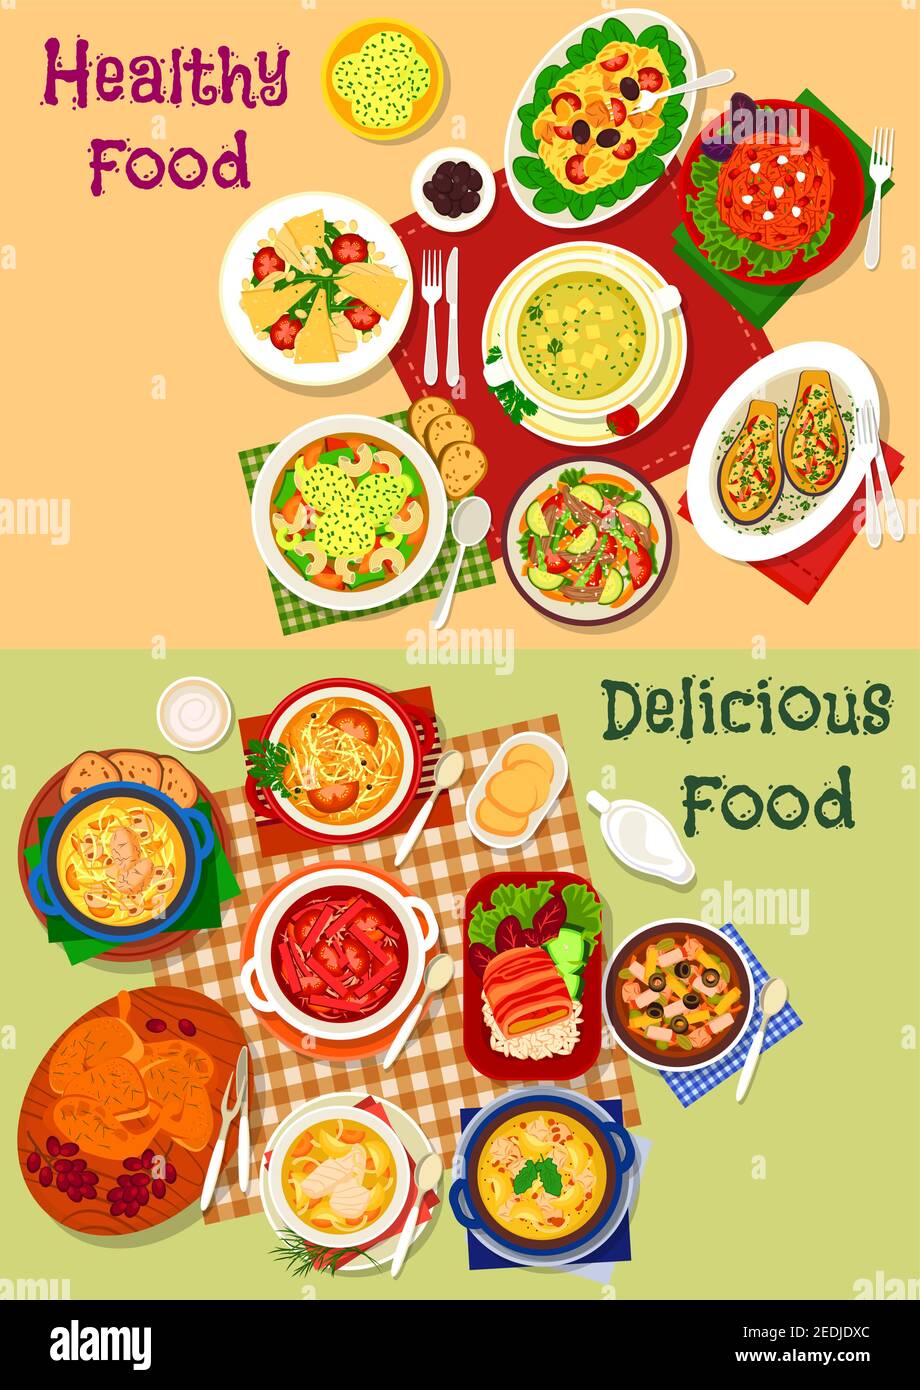 Russische Küche Suppe und frische Salatgerichte Icon Set mit Gemüse, Fleisch und Pasta-Salat, Rindfleisch, Huhn, Fischsuppe mit Pilz, Wurst, Käse du Stock Vektor